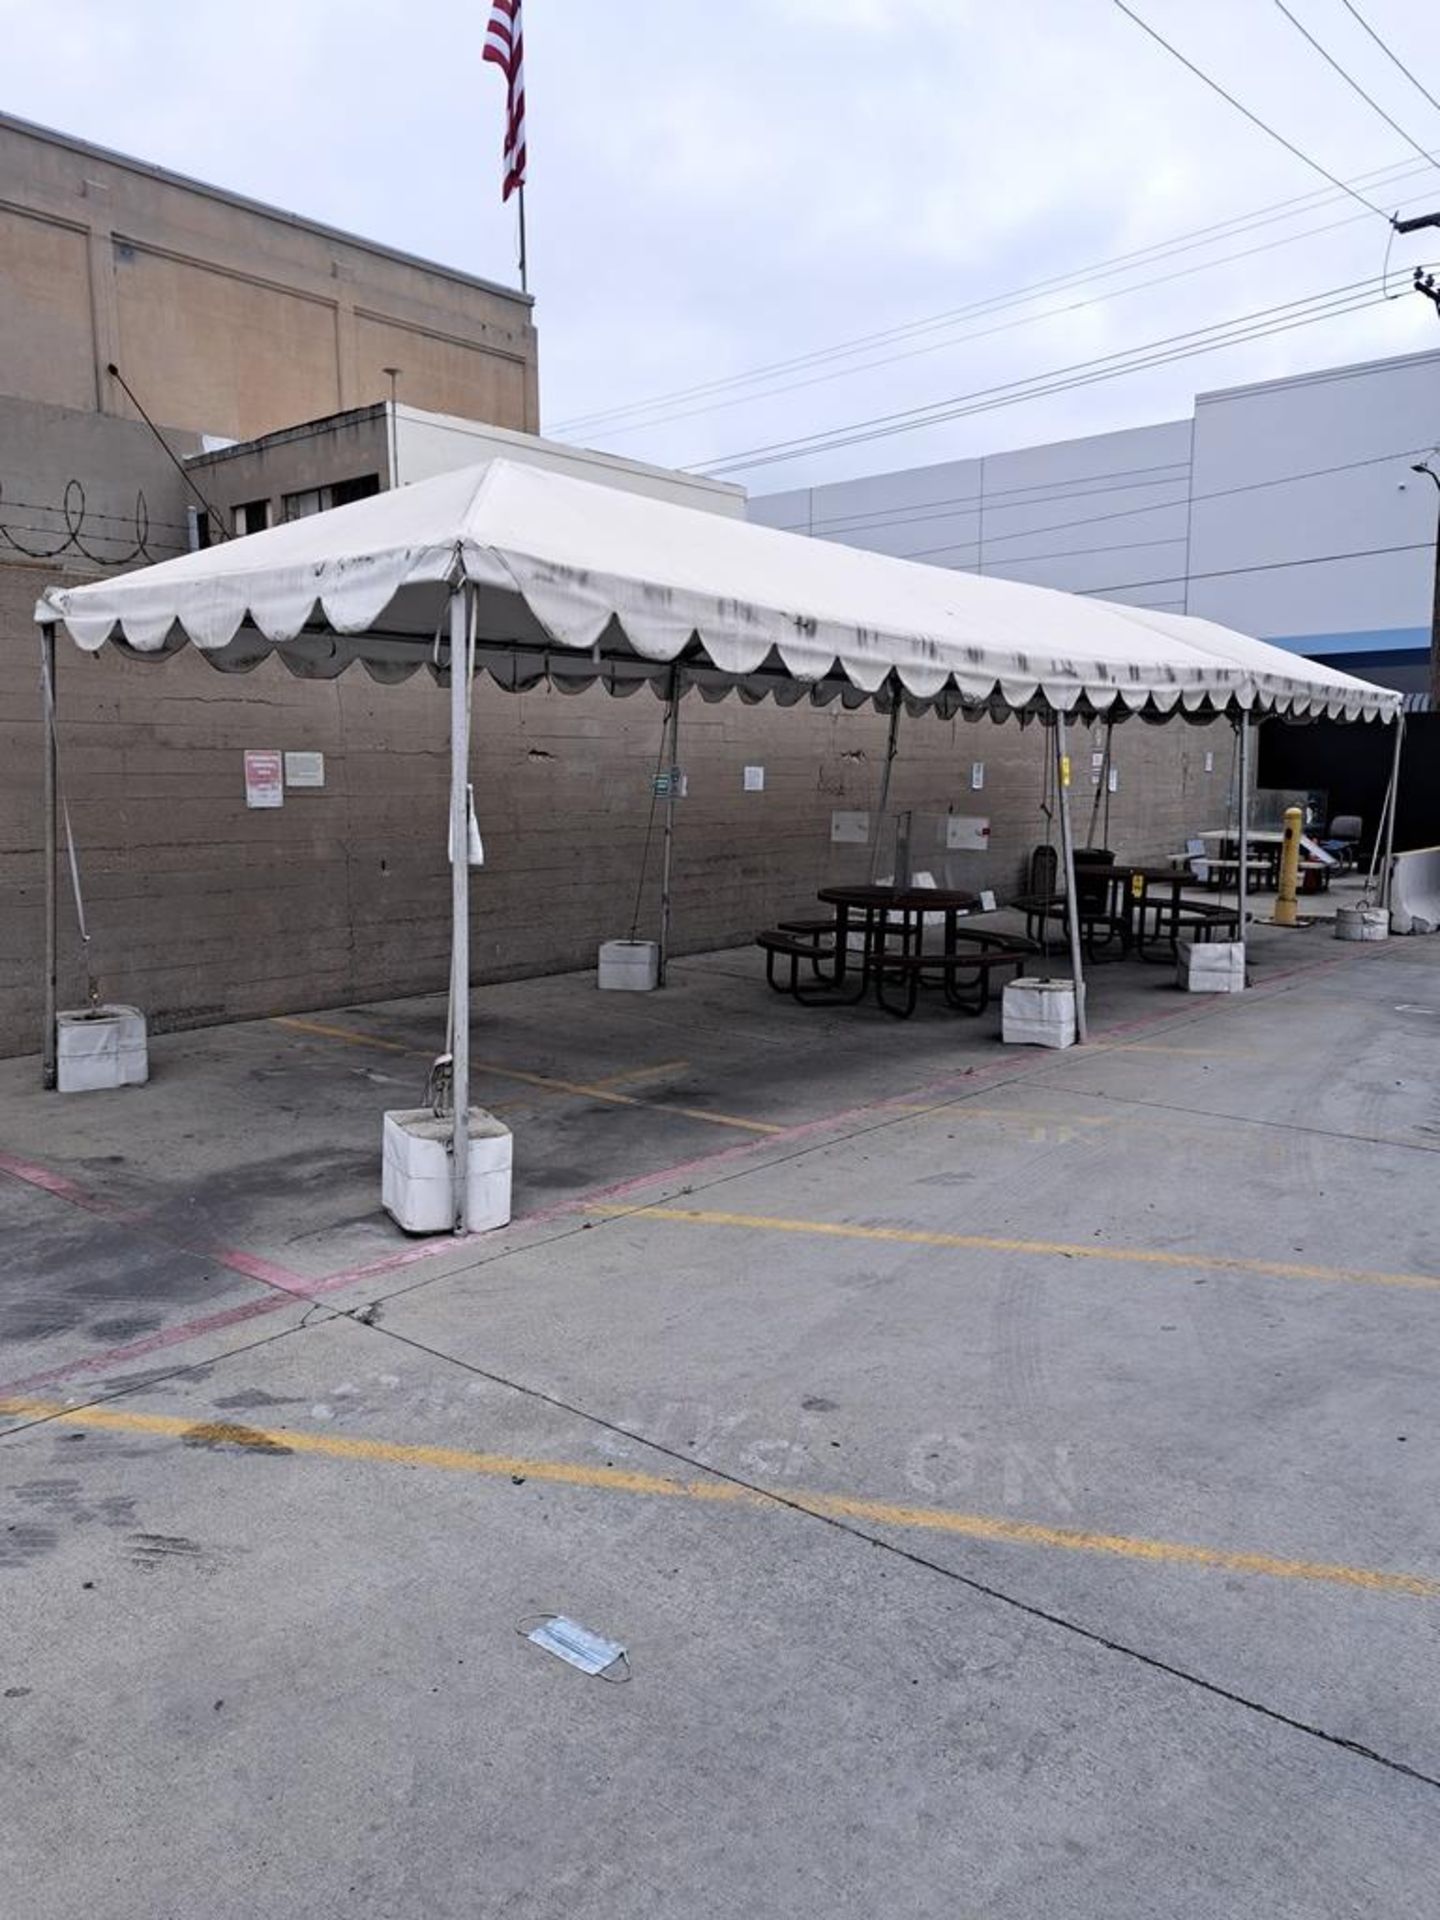 Tentmax Tent, approx. 11' W X 37' L X 10' T, aluminum poles (Contact Norm Pavlish - Nebraska